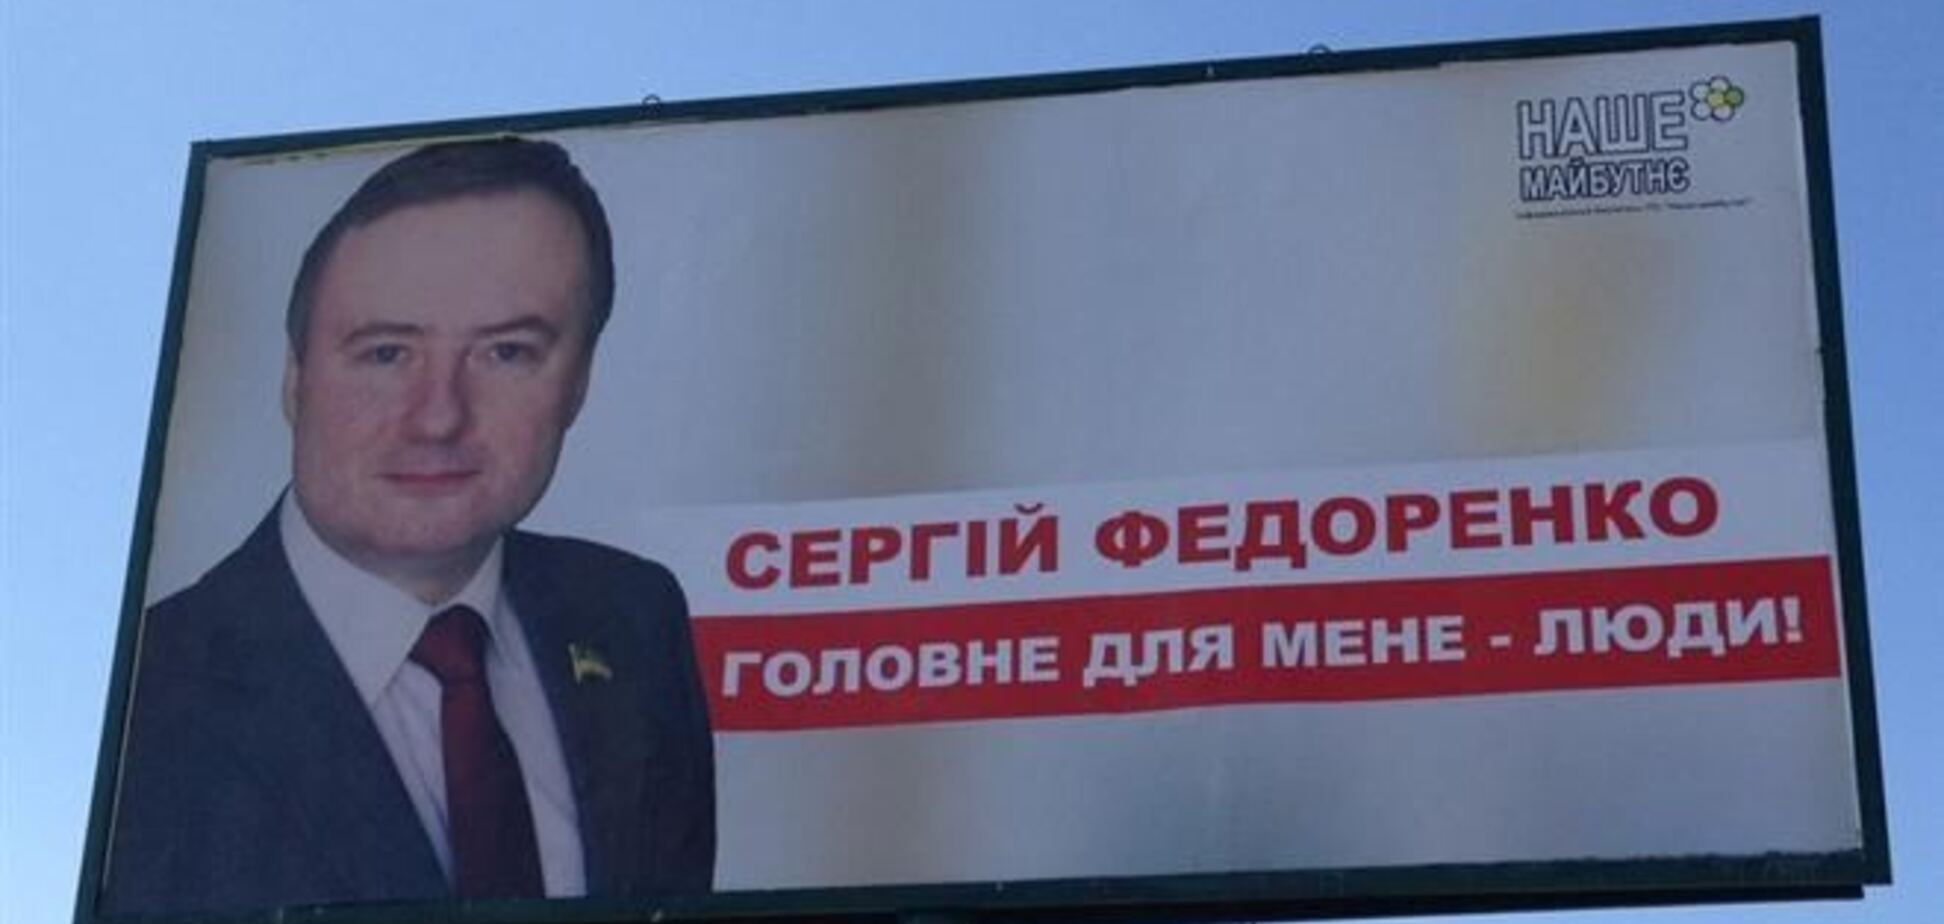 Массажист Азарова стал 'местным князьком' в Броварах - СМИ